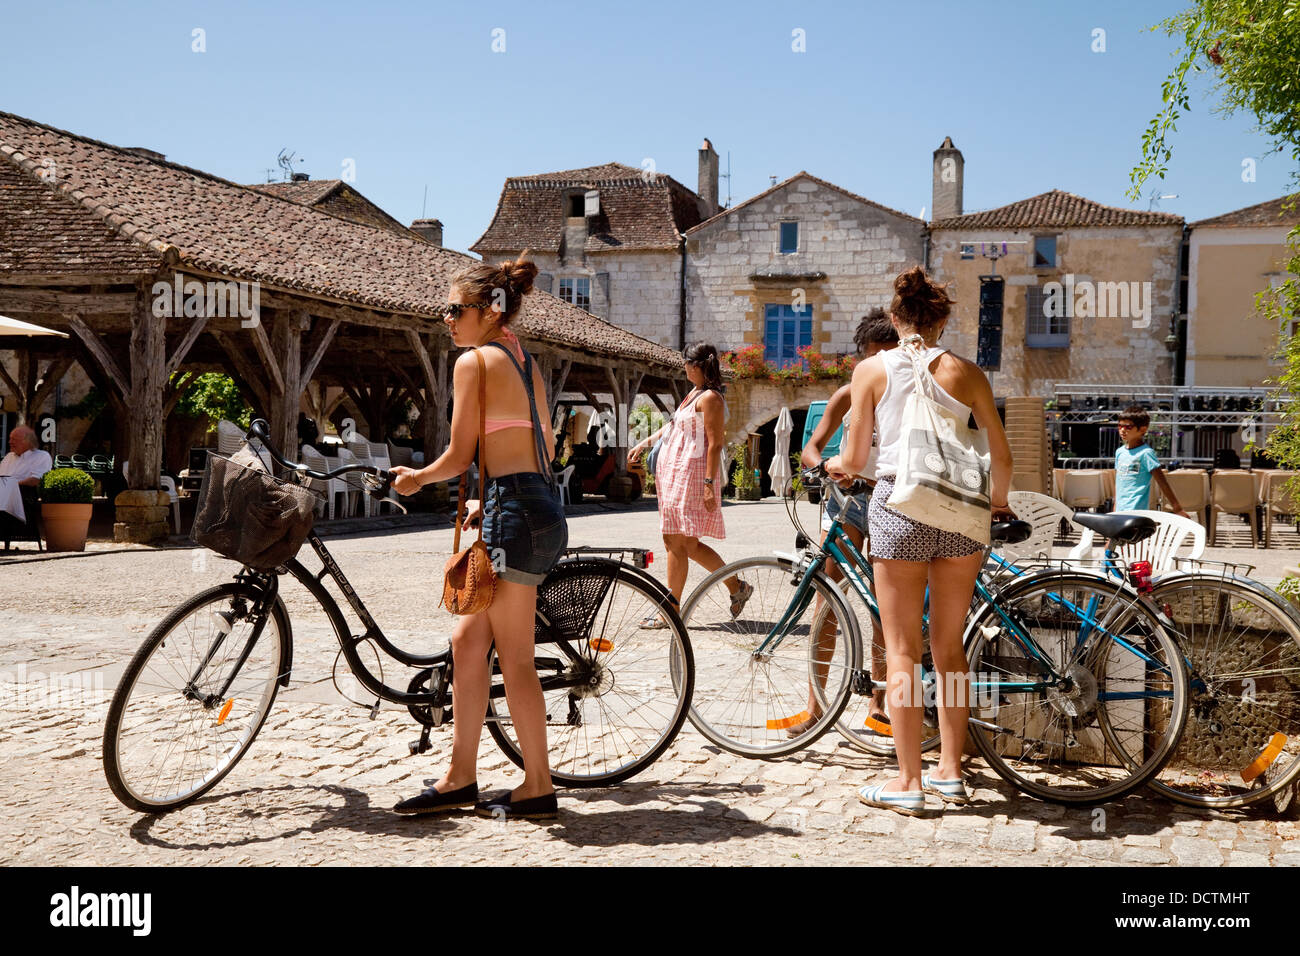 Les adolescentes en vacances à vélo dans un village bastide de Monpazier, Dordogne, France, Europe Banque D'Images